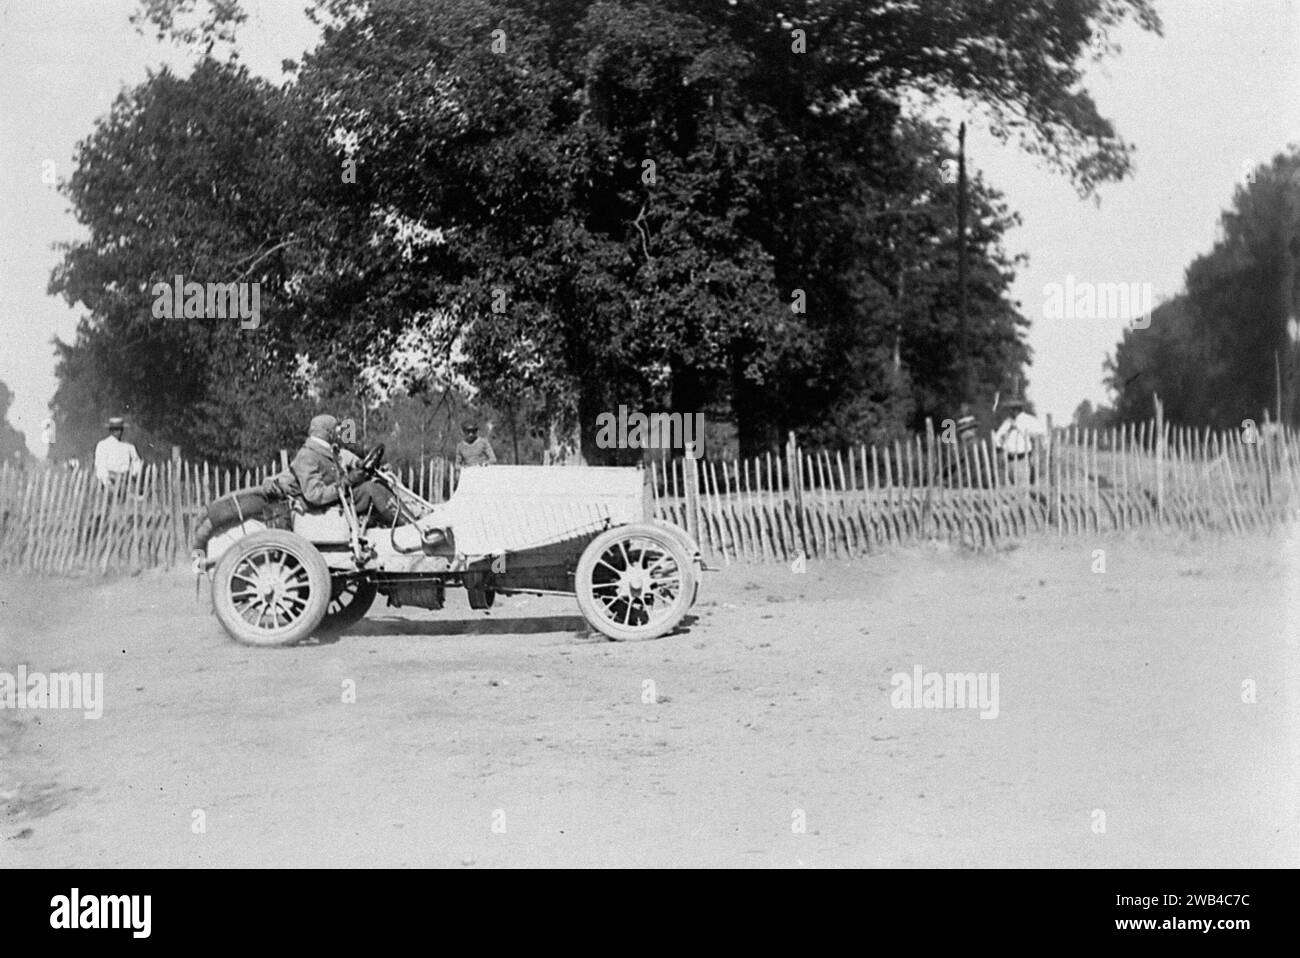 Prima edizione della 24 ore di le Mans endurance sport car race (24 heures du Mans). 26 e 27 giugno 1906. Foto di Jean de Biré Foto Stock